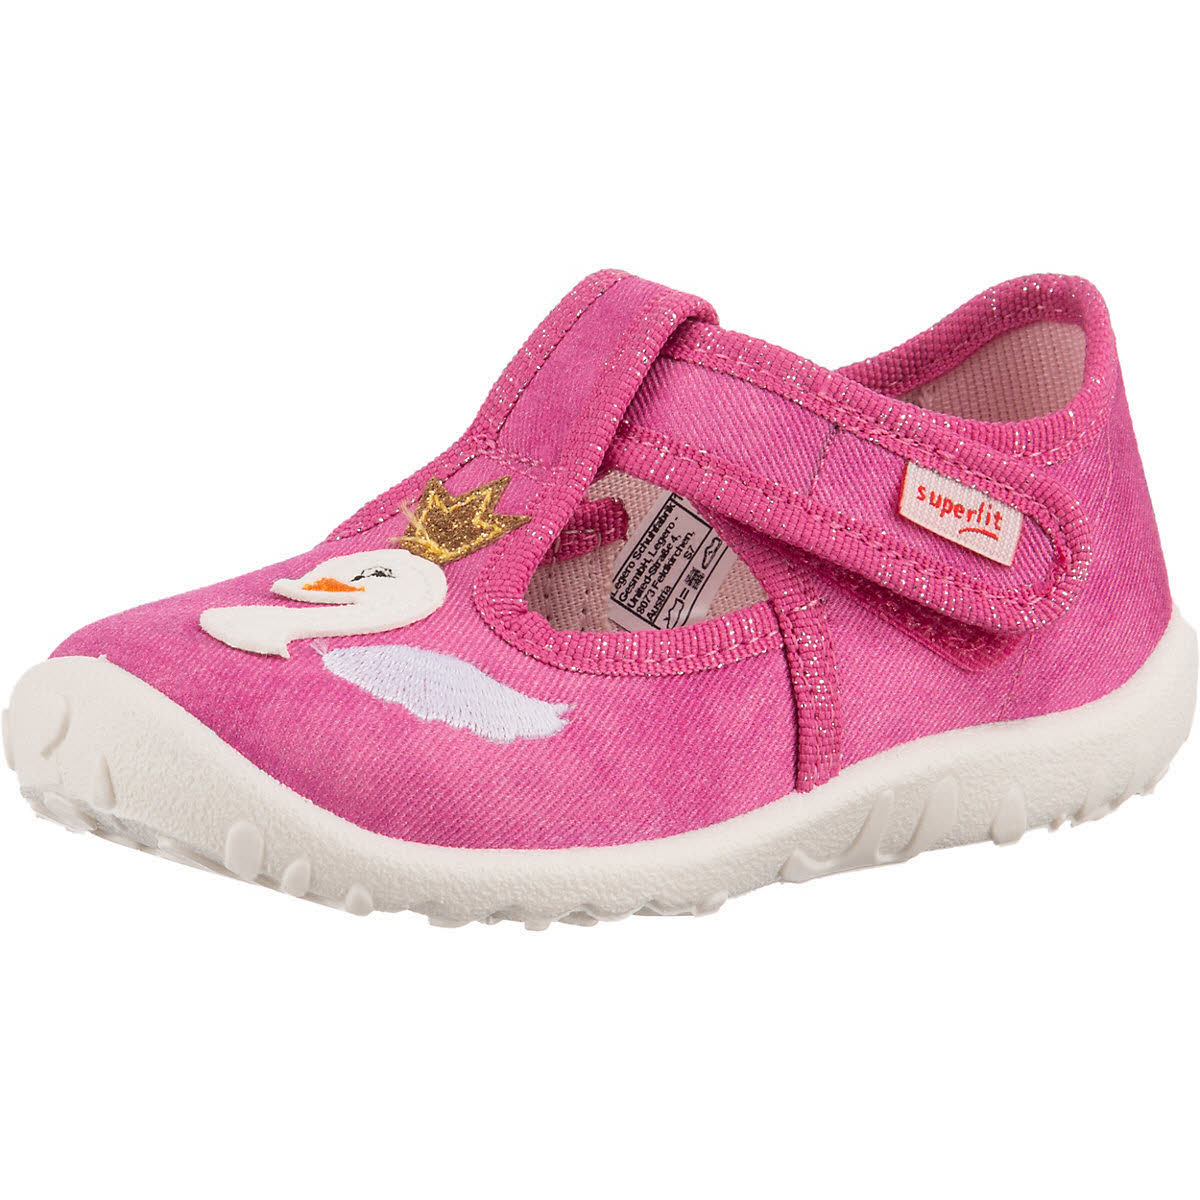 Superfit Spotty Kinder Hausschuhe Pantoffeln Kletter Freizeitschuhe pink NEU